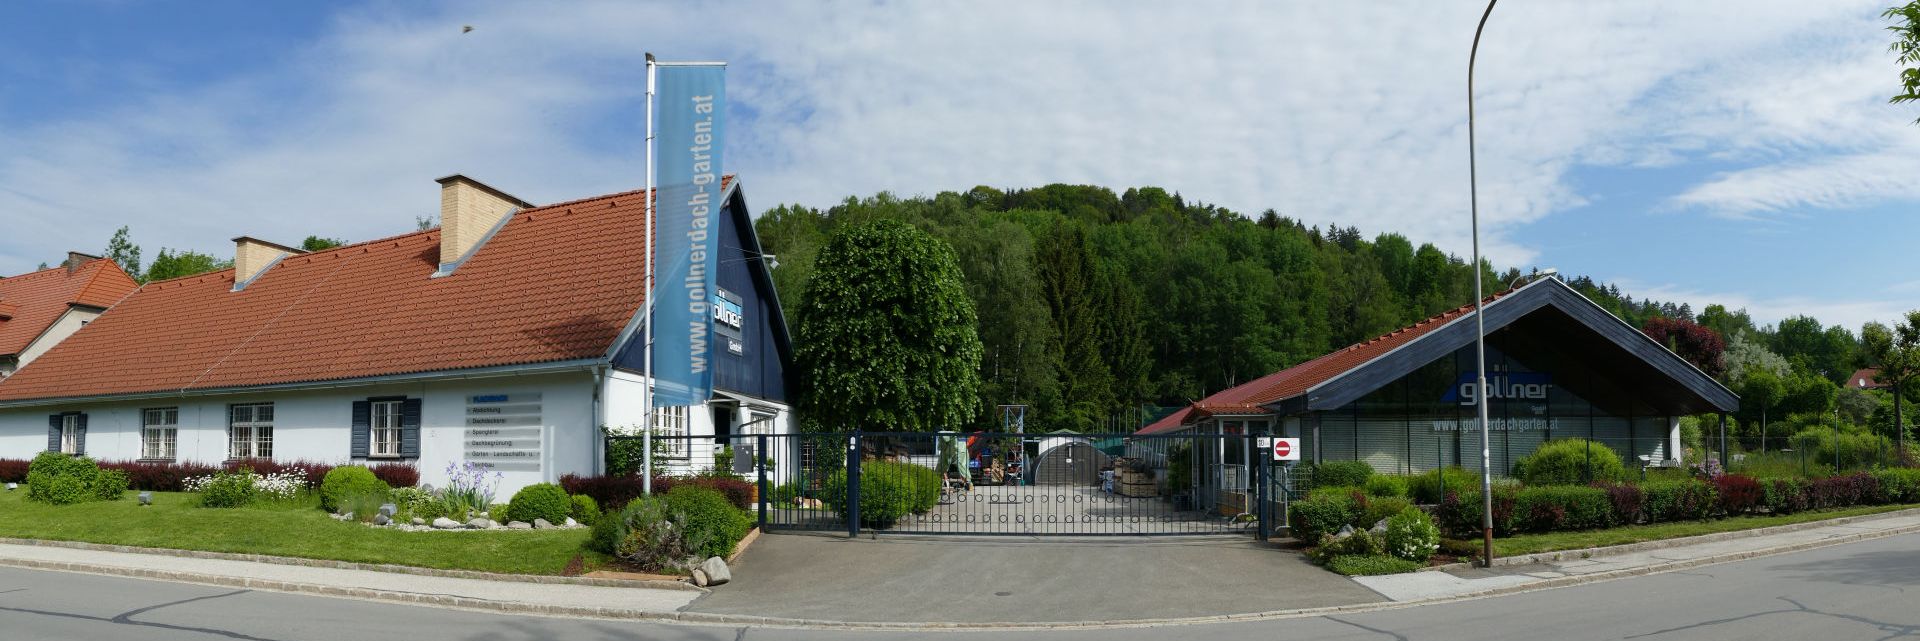 Firmengelände in Kapfenberg - Gollner GmbH - Dachdeckerei, Spenglerei, Garten- und Landschaftsgestalter